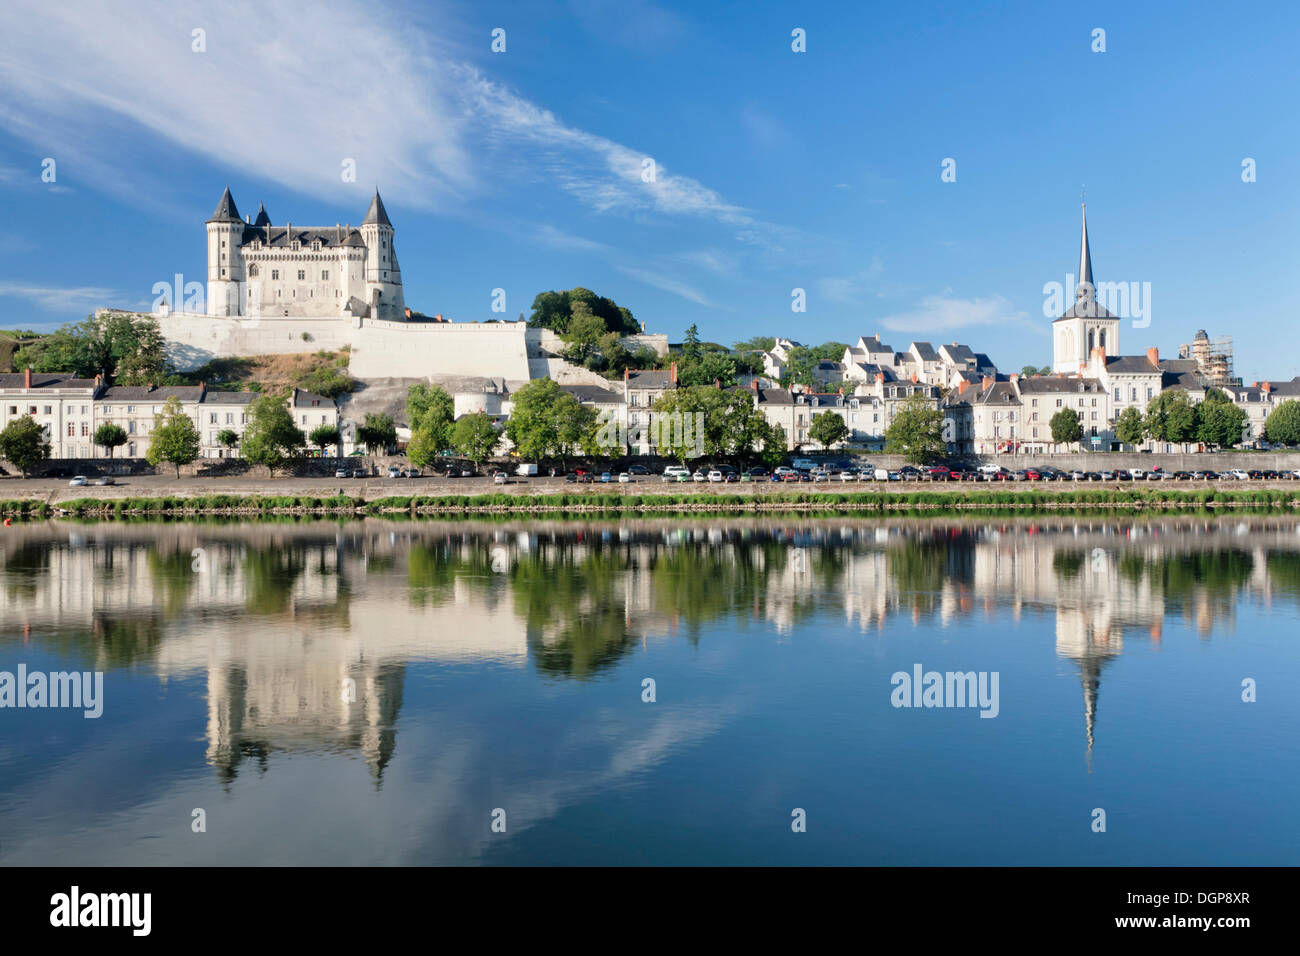 City view with castle and church of Saint Pierre, Saumur, Department Maine-et-Loire, Region Pays de la Loire, France, Europe Stock Photo